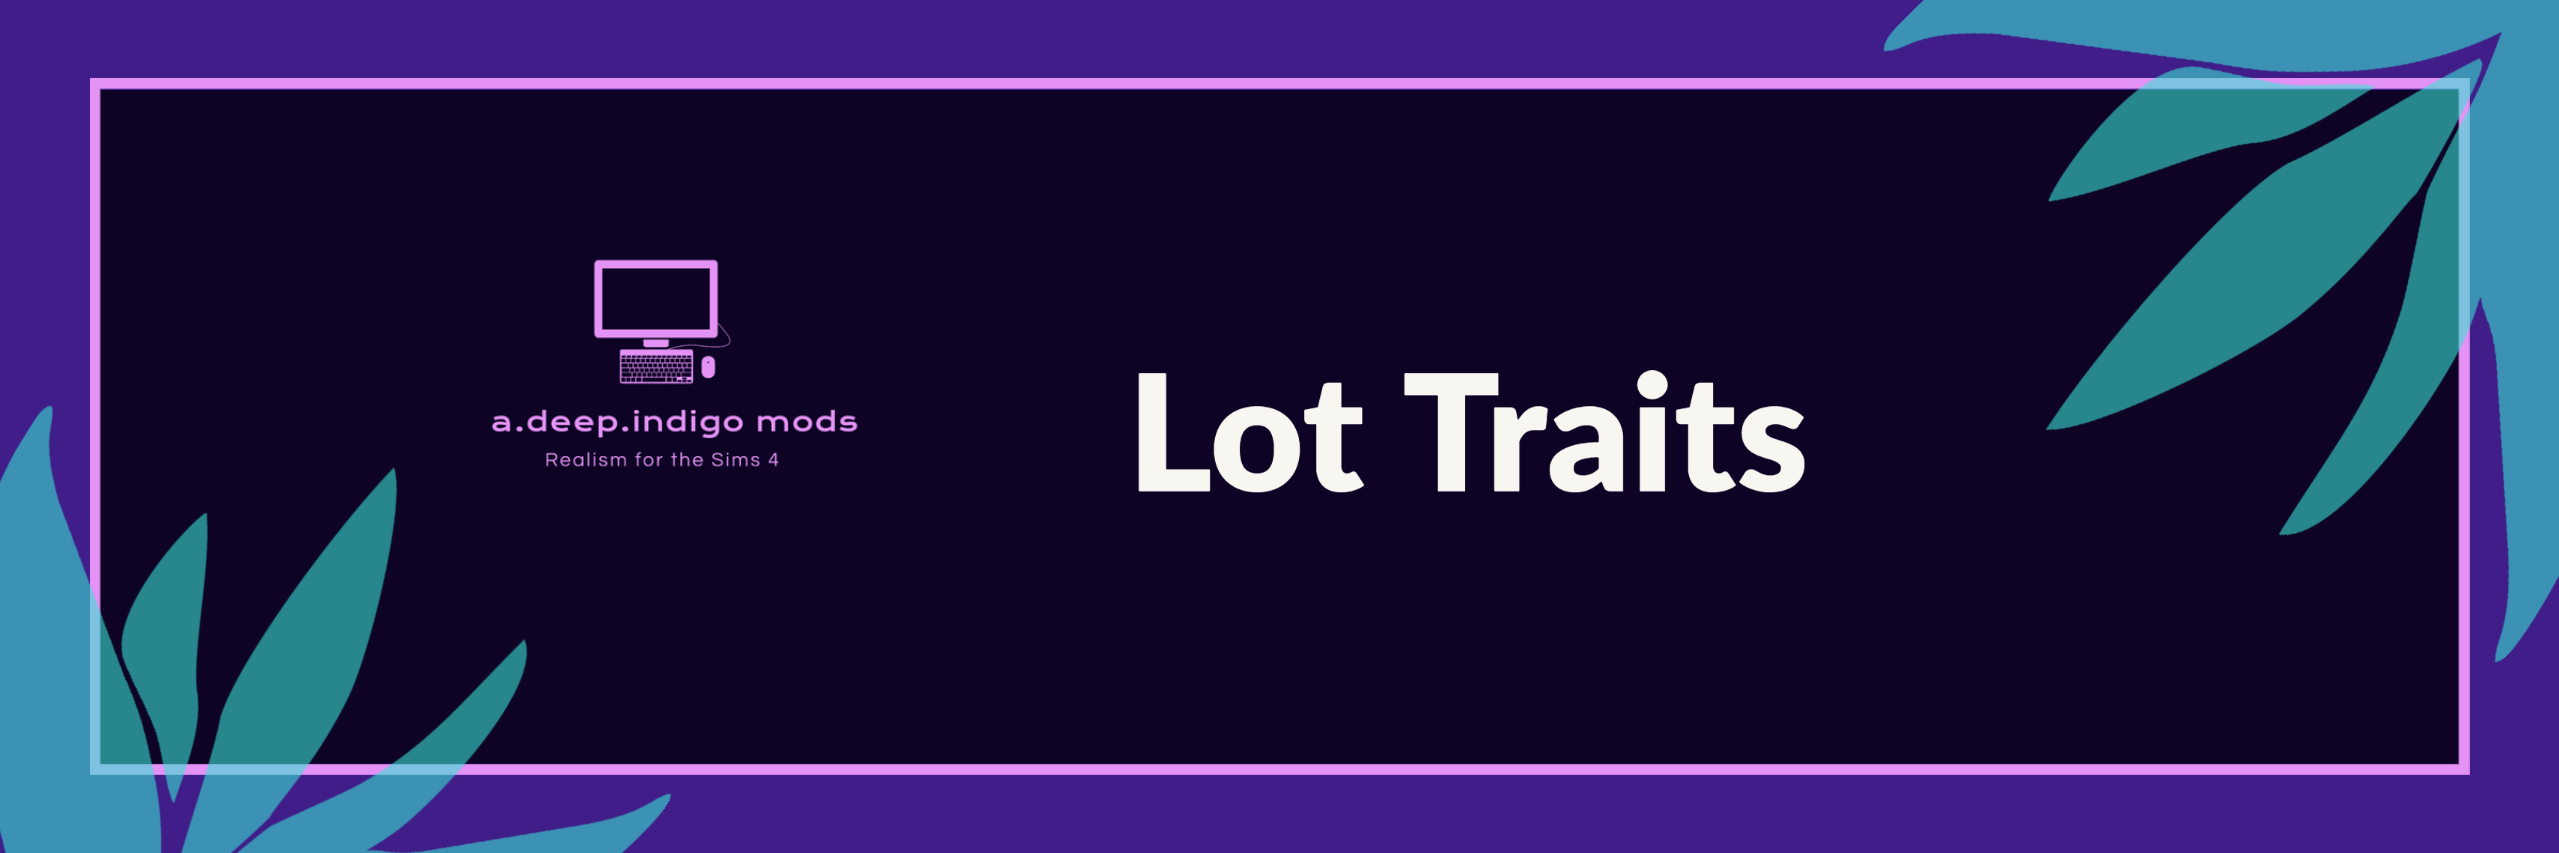 Lot Traits